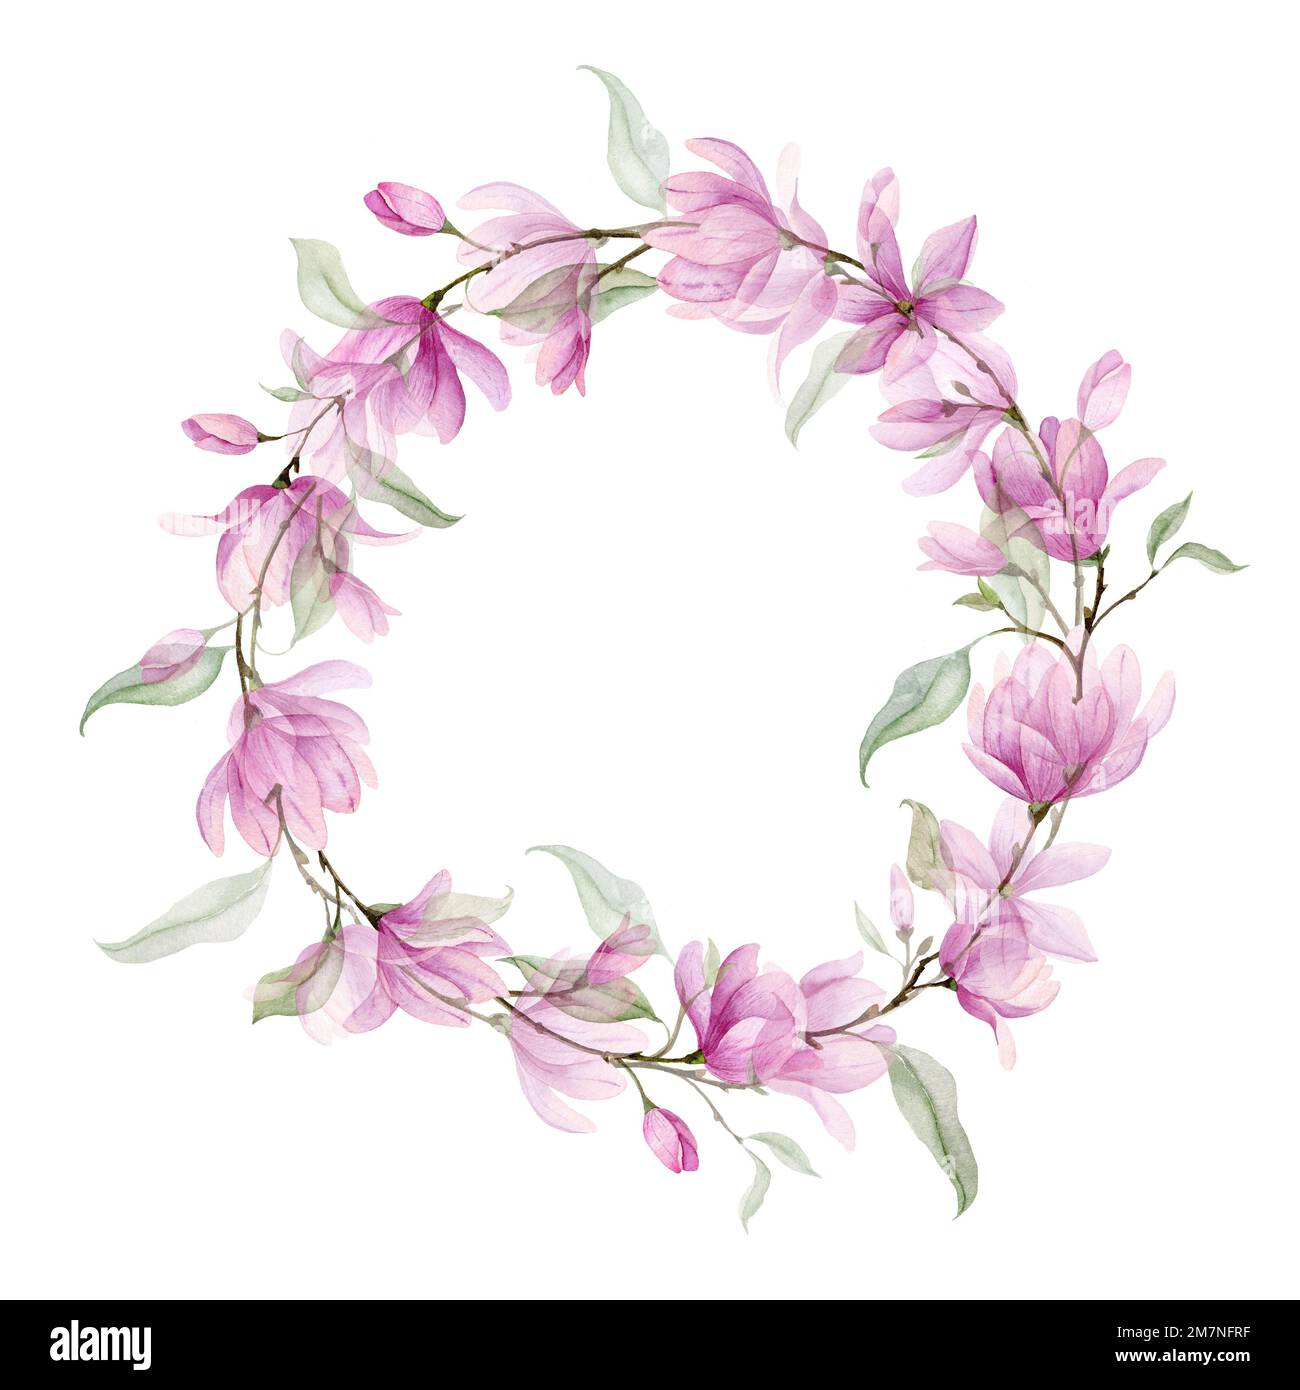 Wreath acquerello con fiori rosa e foglie verdi. Illustrazione disegnata a mano di una cornice circolare con Magnolia o Rose su sfondo isolato. Bordo botanico per biglietti d'auguri o inviti di nozze. Foto Stock